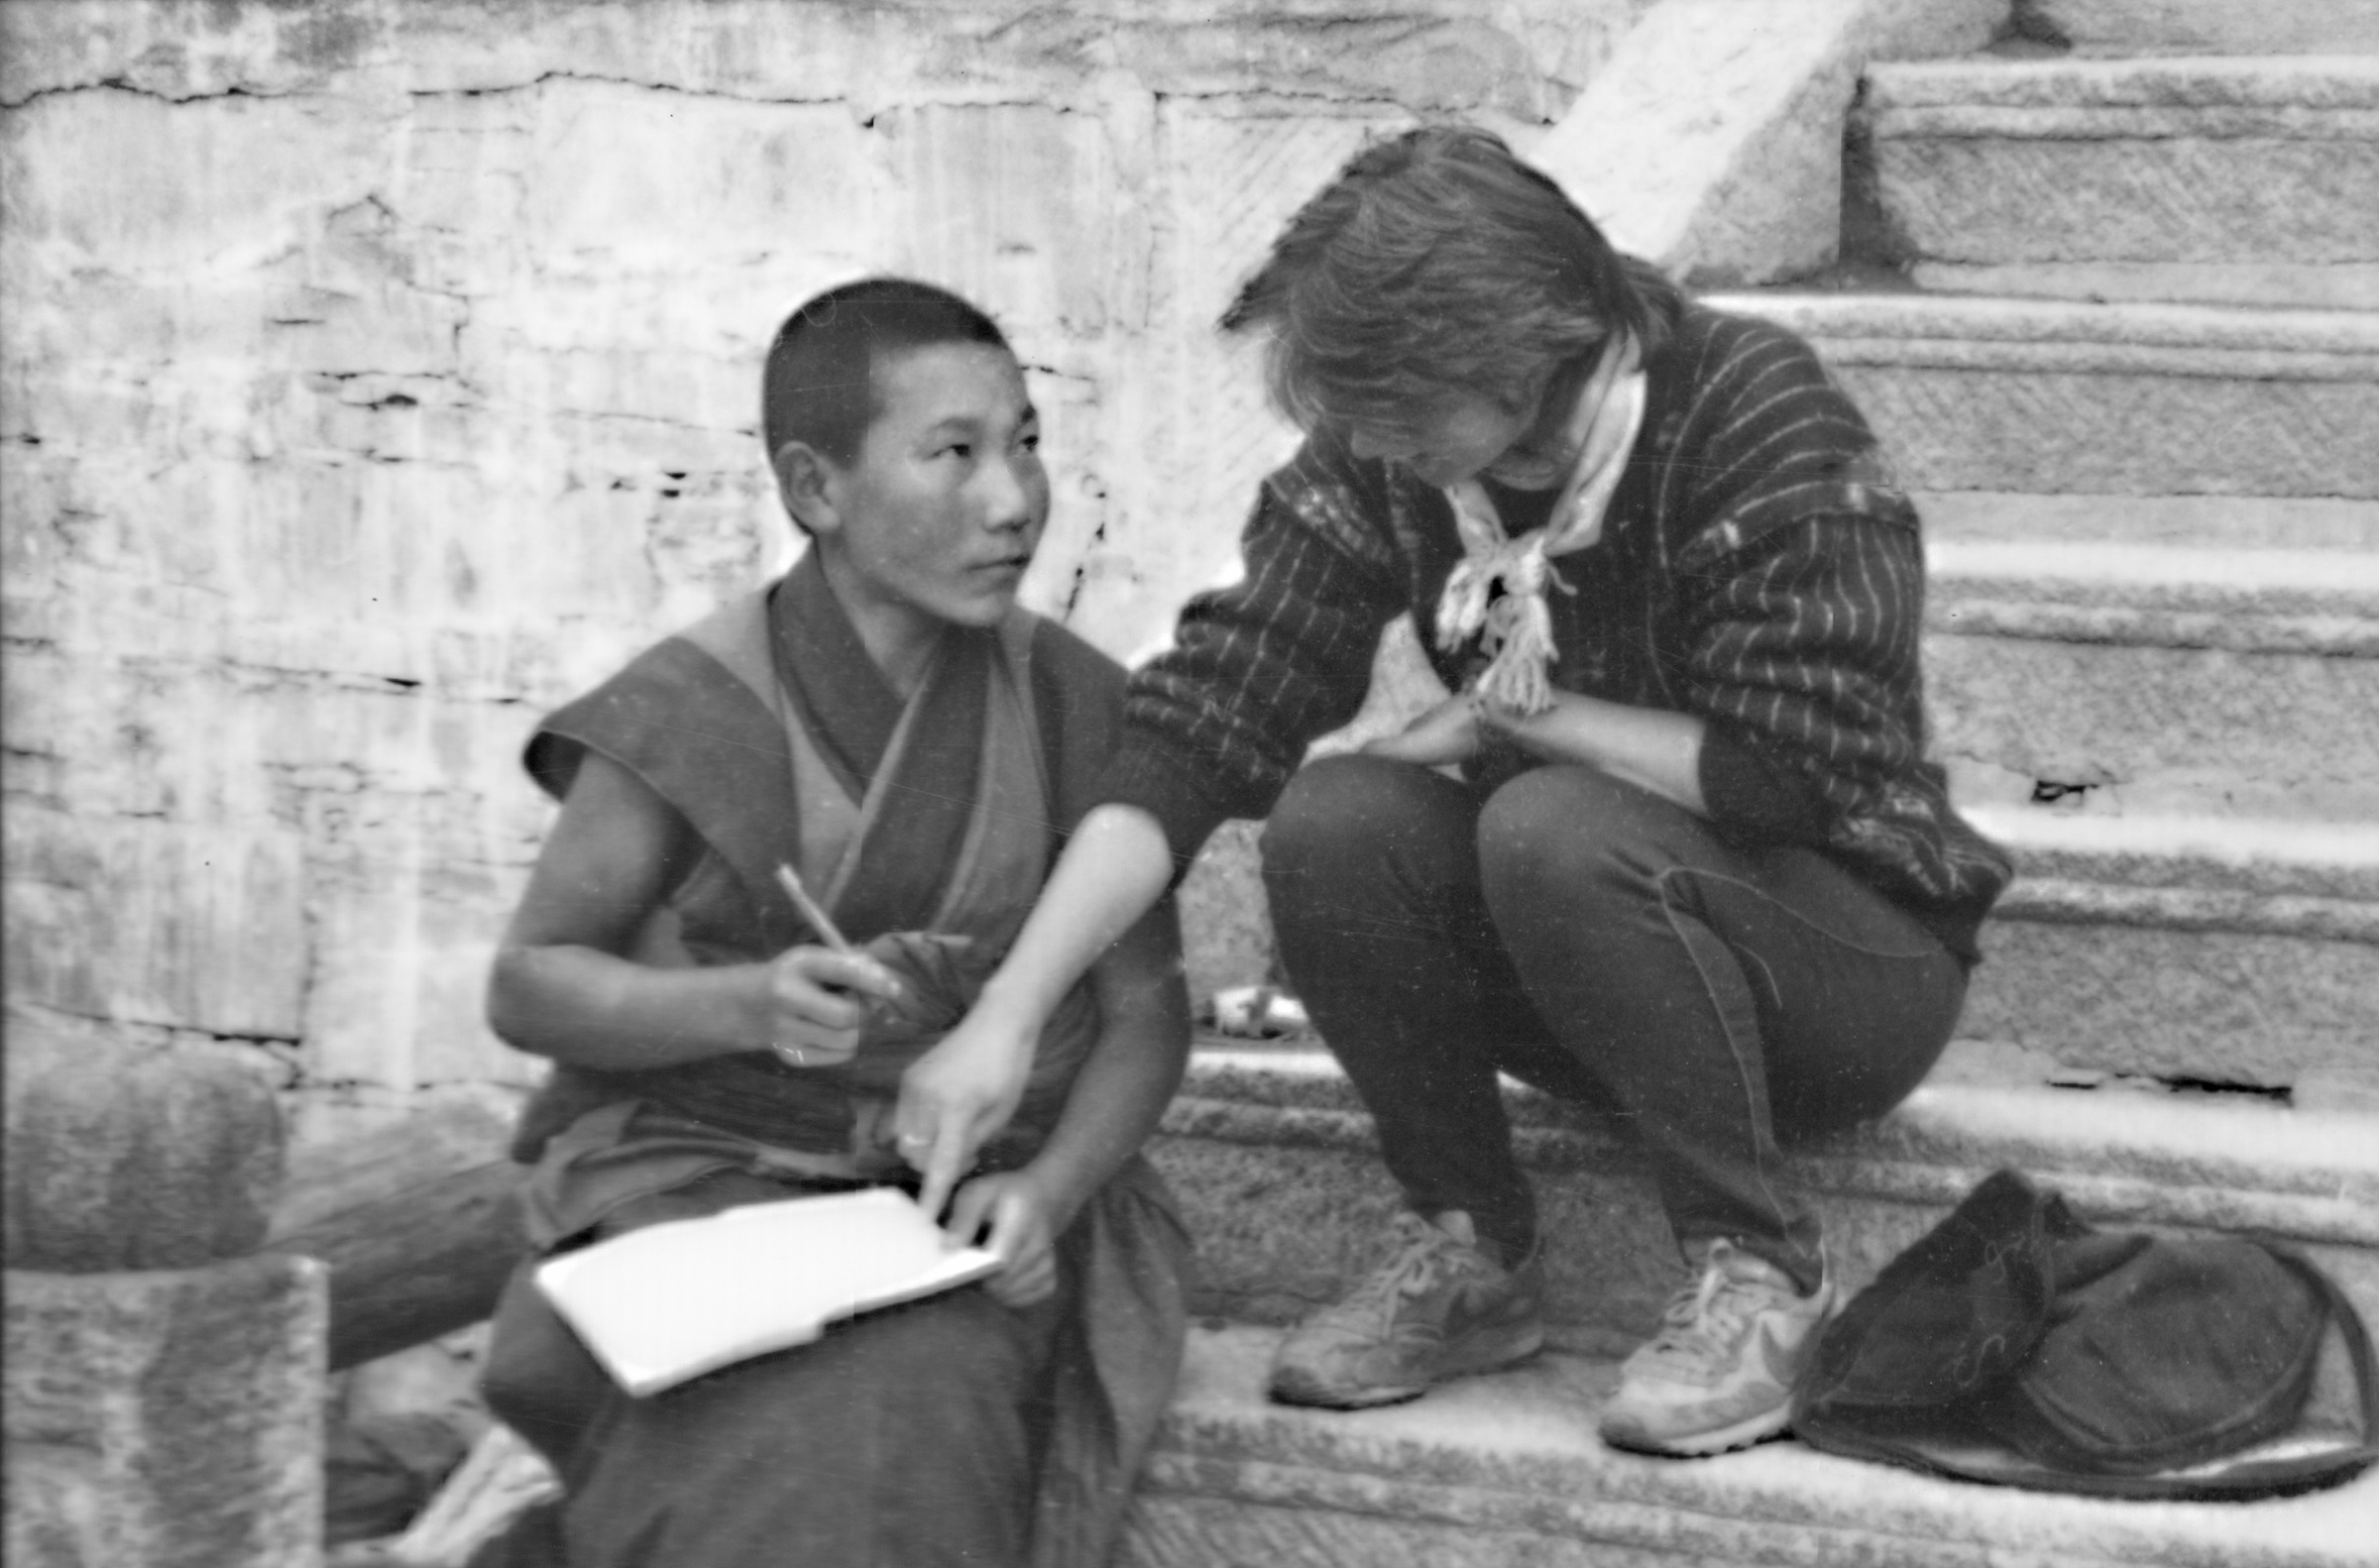 KJ in China writing notebook 1989.jpeg